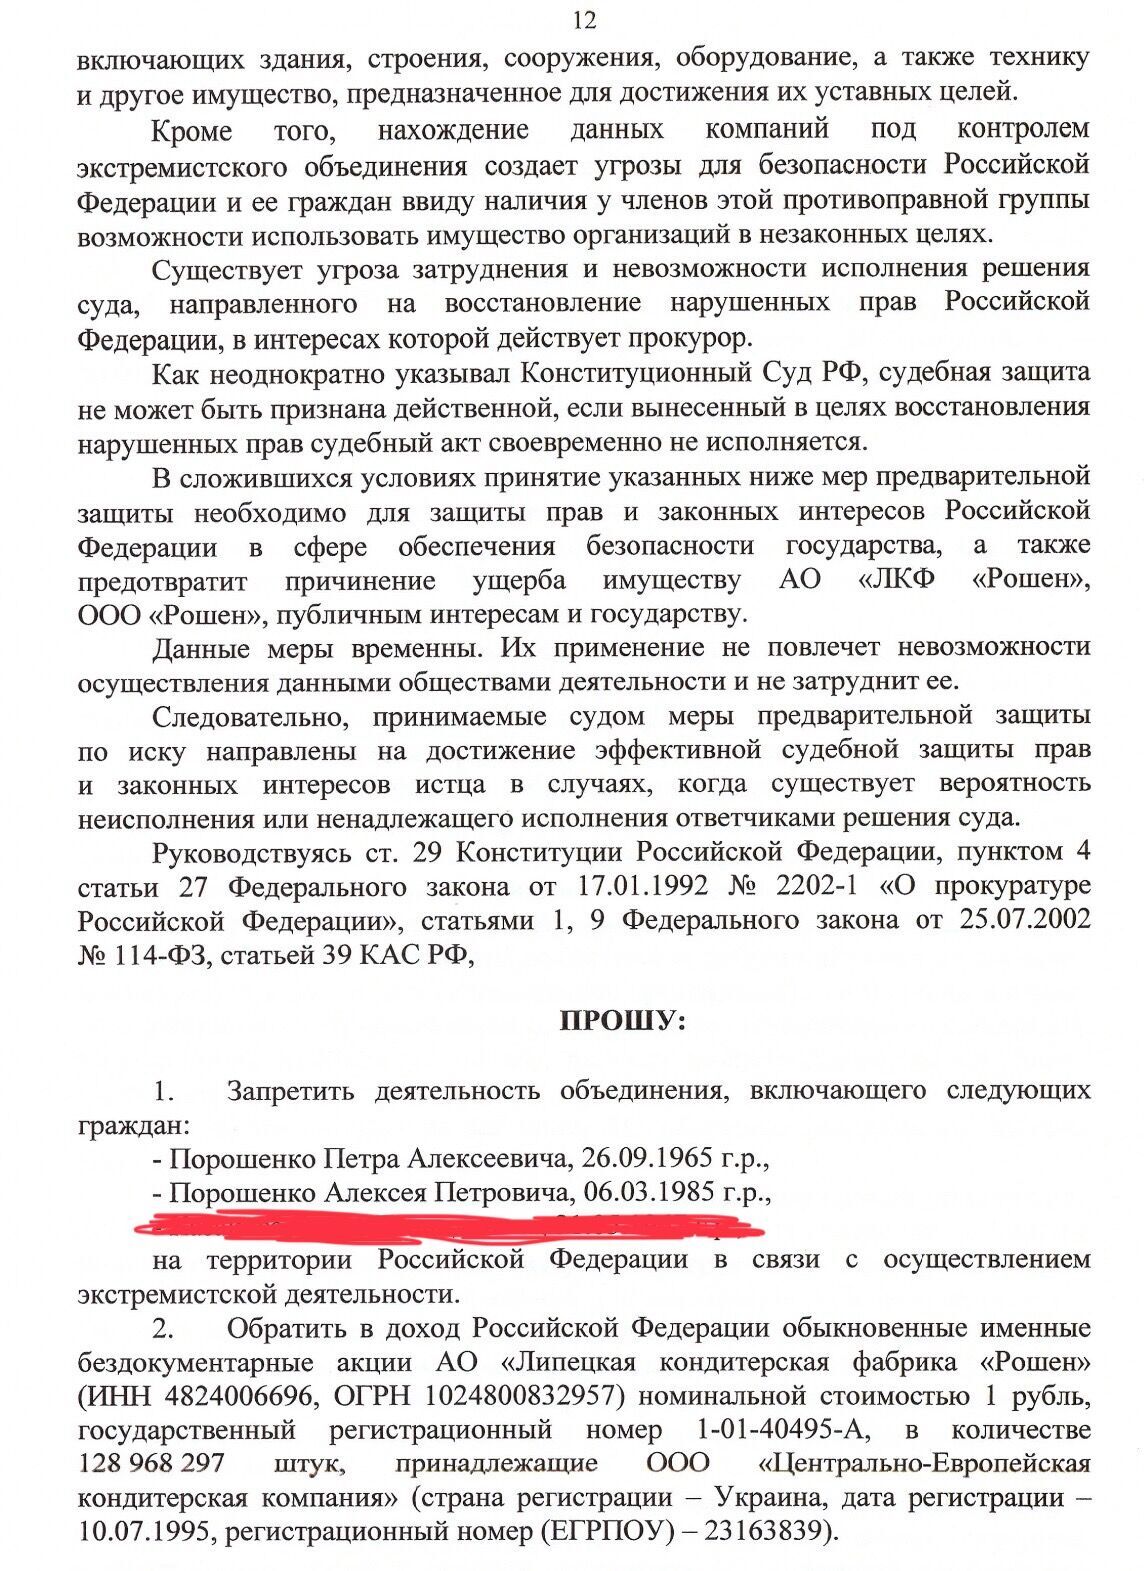 У Росії Порошенка вважають екстремістом через багатомільярдну допомогу ЗСУ: адвокат оприлюднив документи